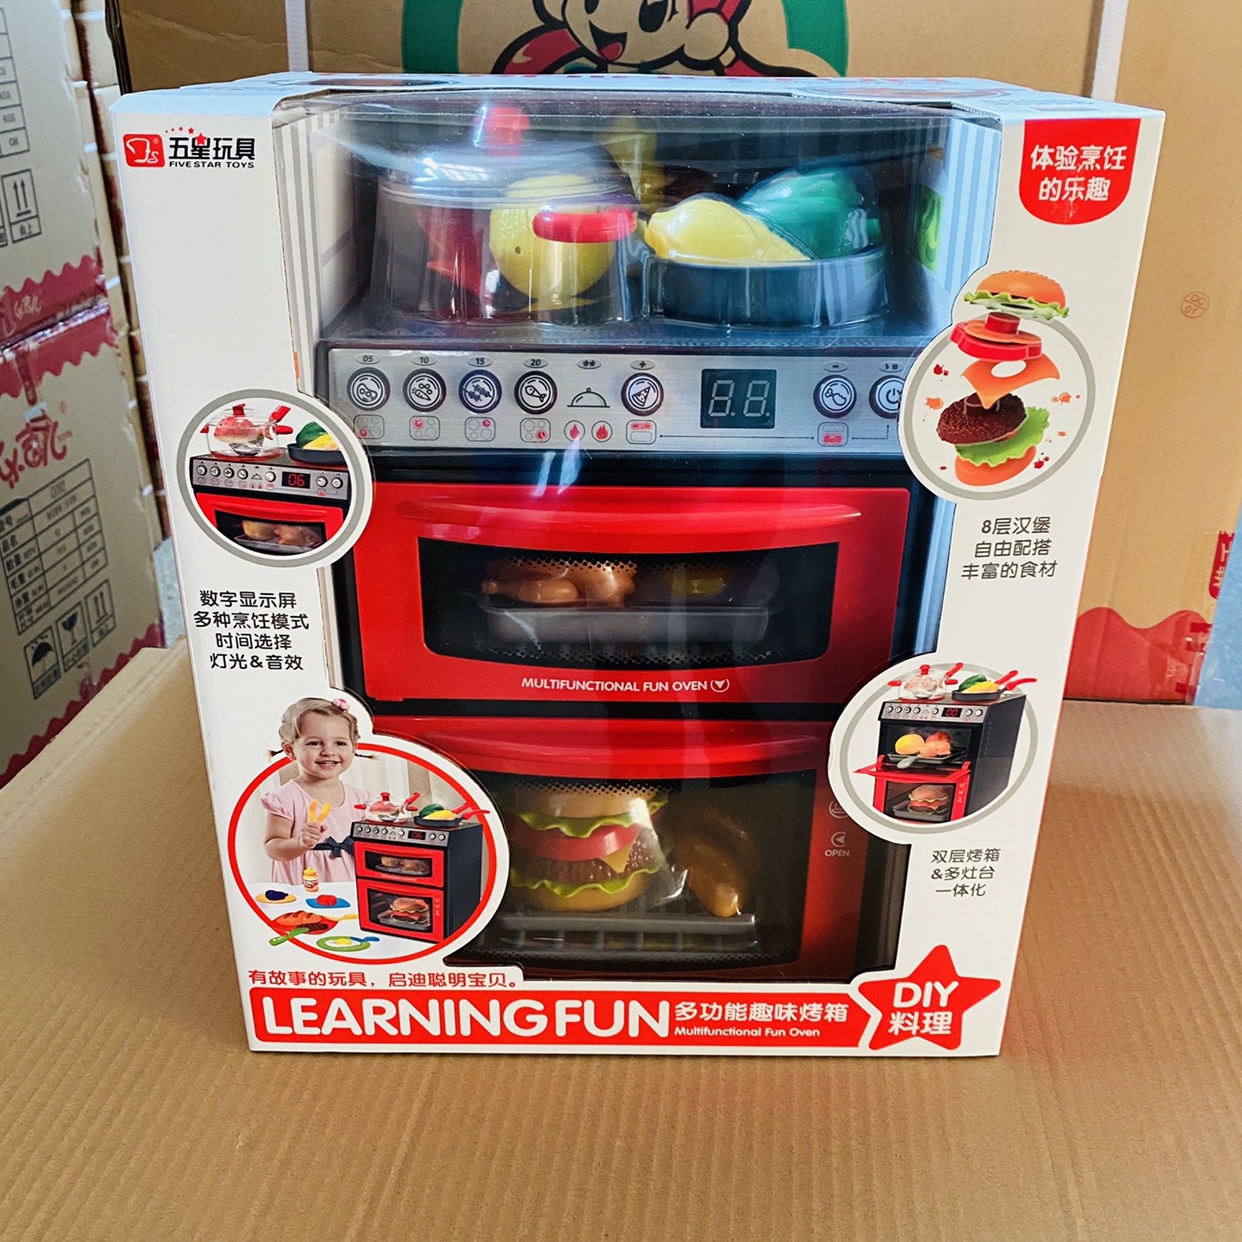 五星玩具宝宝多功能趣味烤箱儿童玩具套装微波炉过家家仿真小家电